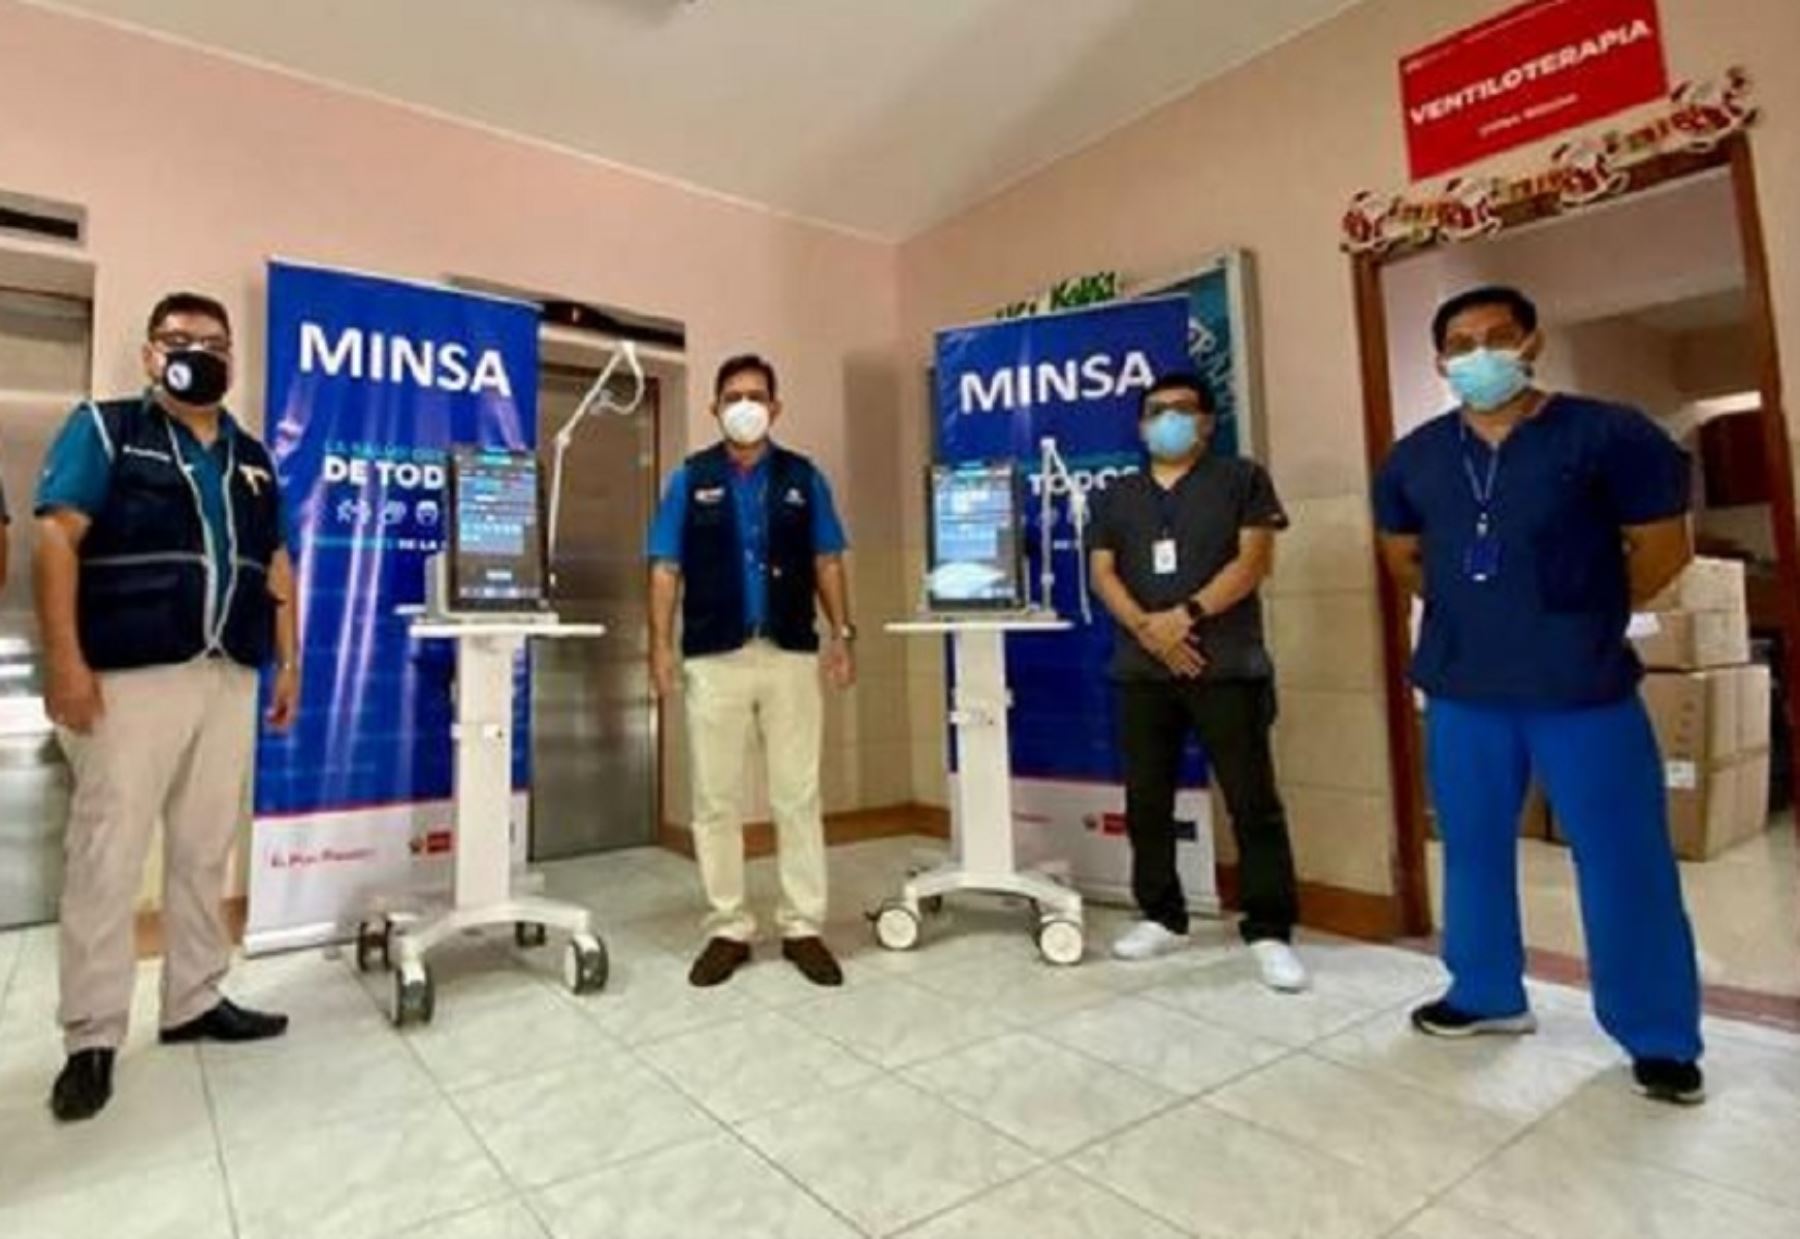 El Ministerio de Salud entregó 10 ventiladores mecánicos al Hospital Regional Docente de Trujillo, en la región La Libertad, y otros 10 al Hospital Nacional Dos de Mayo de Lima, como parte de su objetivo de reforzar los servicios del tercer nivel de atención en salud. Foto: Minsa